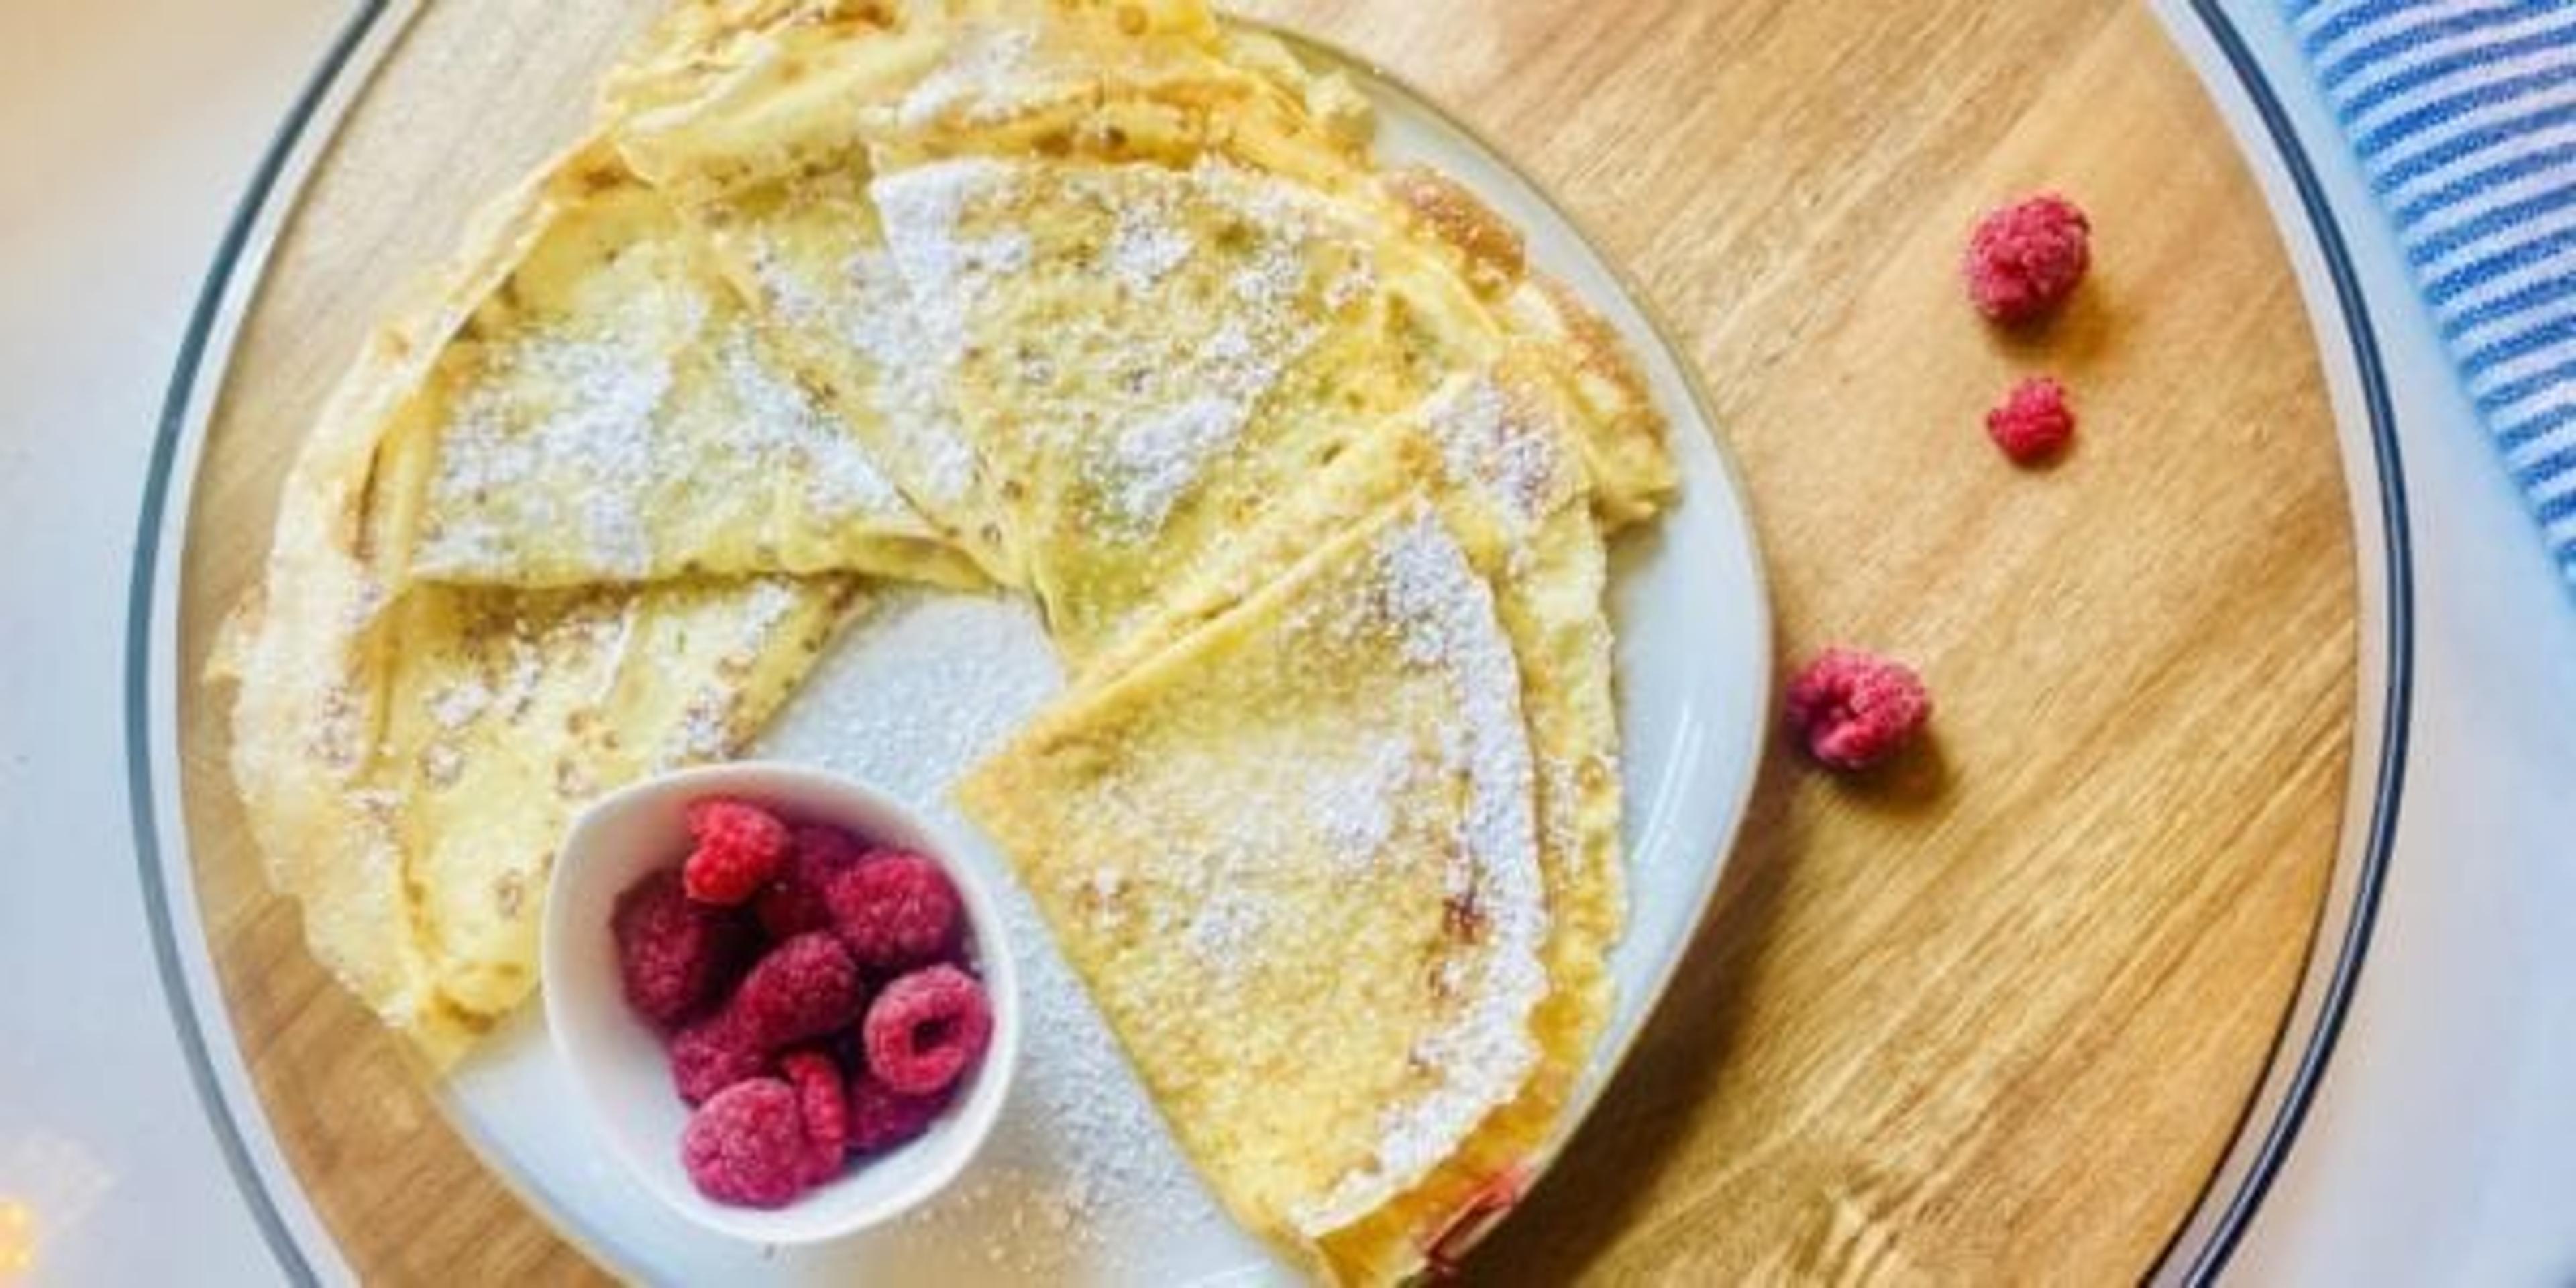 Paczki-inspired pancake with raspberries